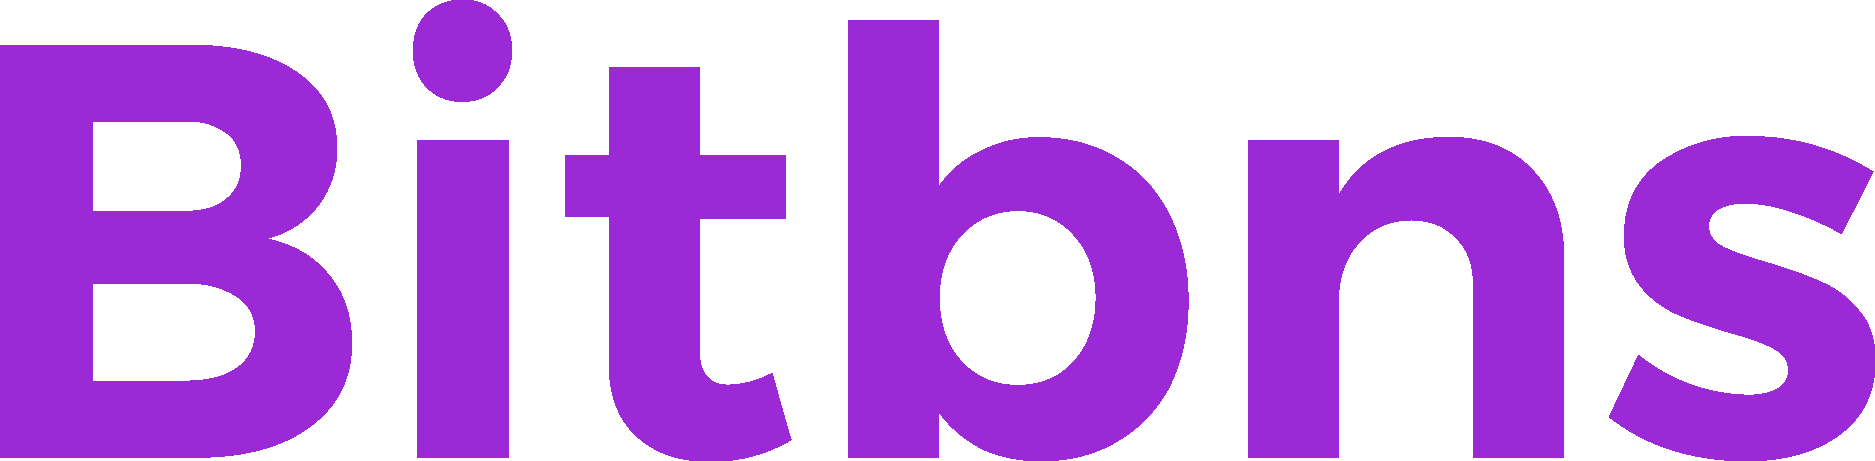 Bitbns (BNS) Wordmark Logo Vector